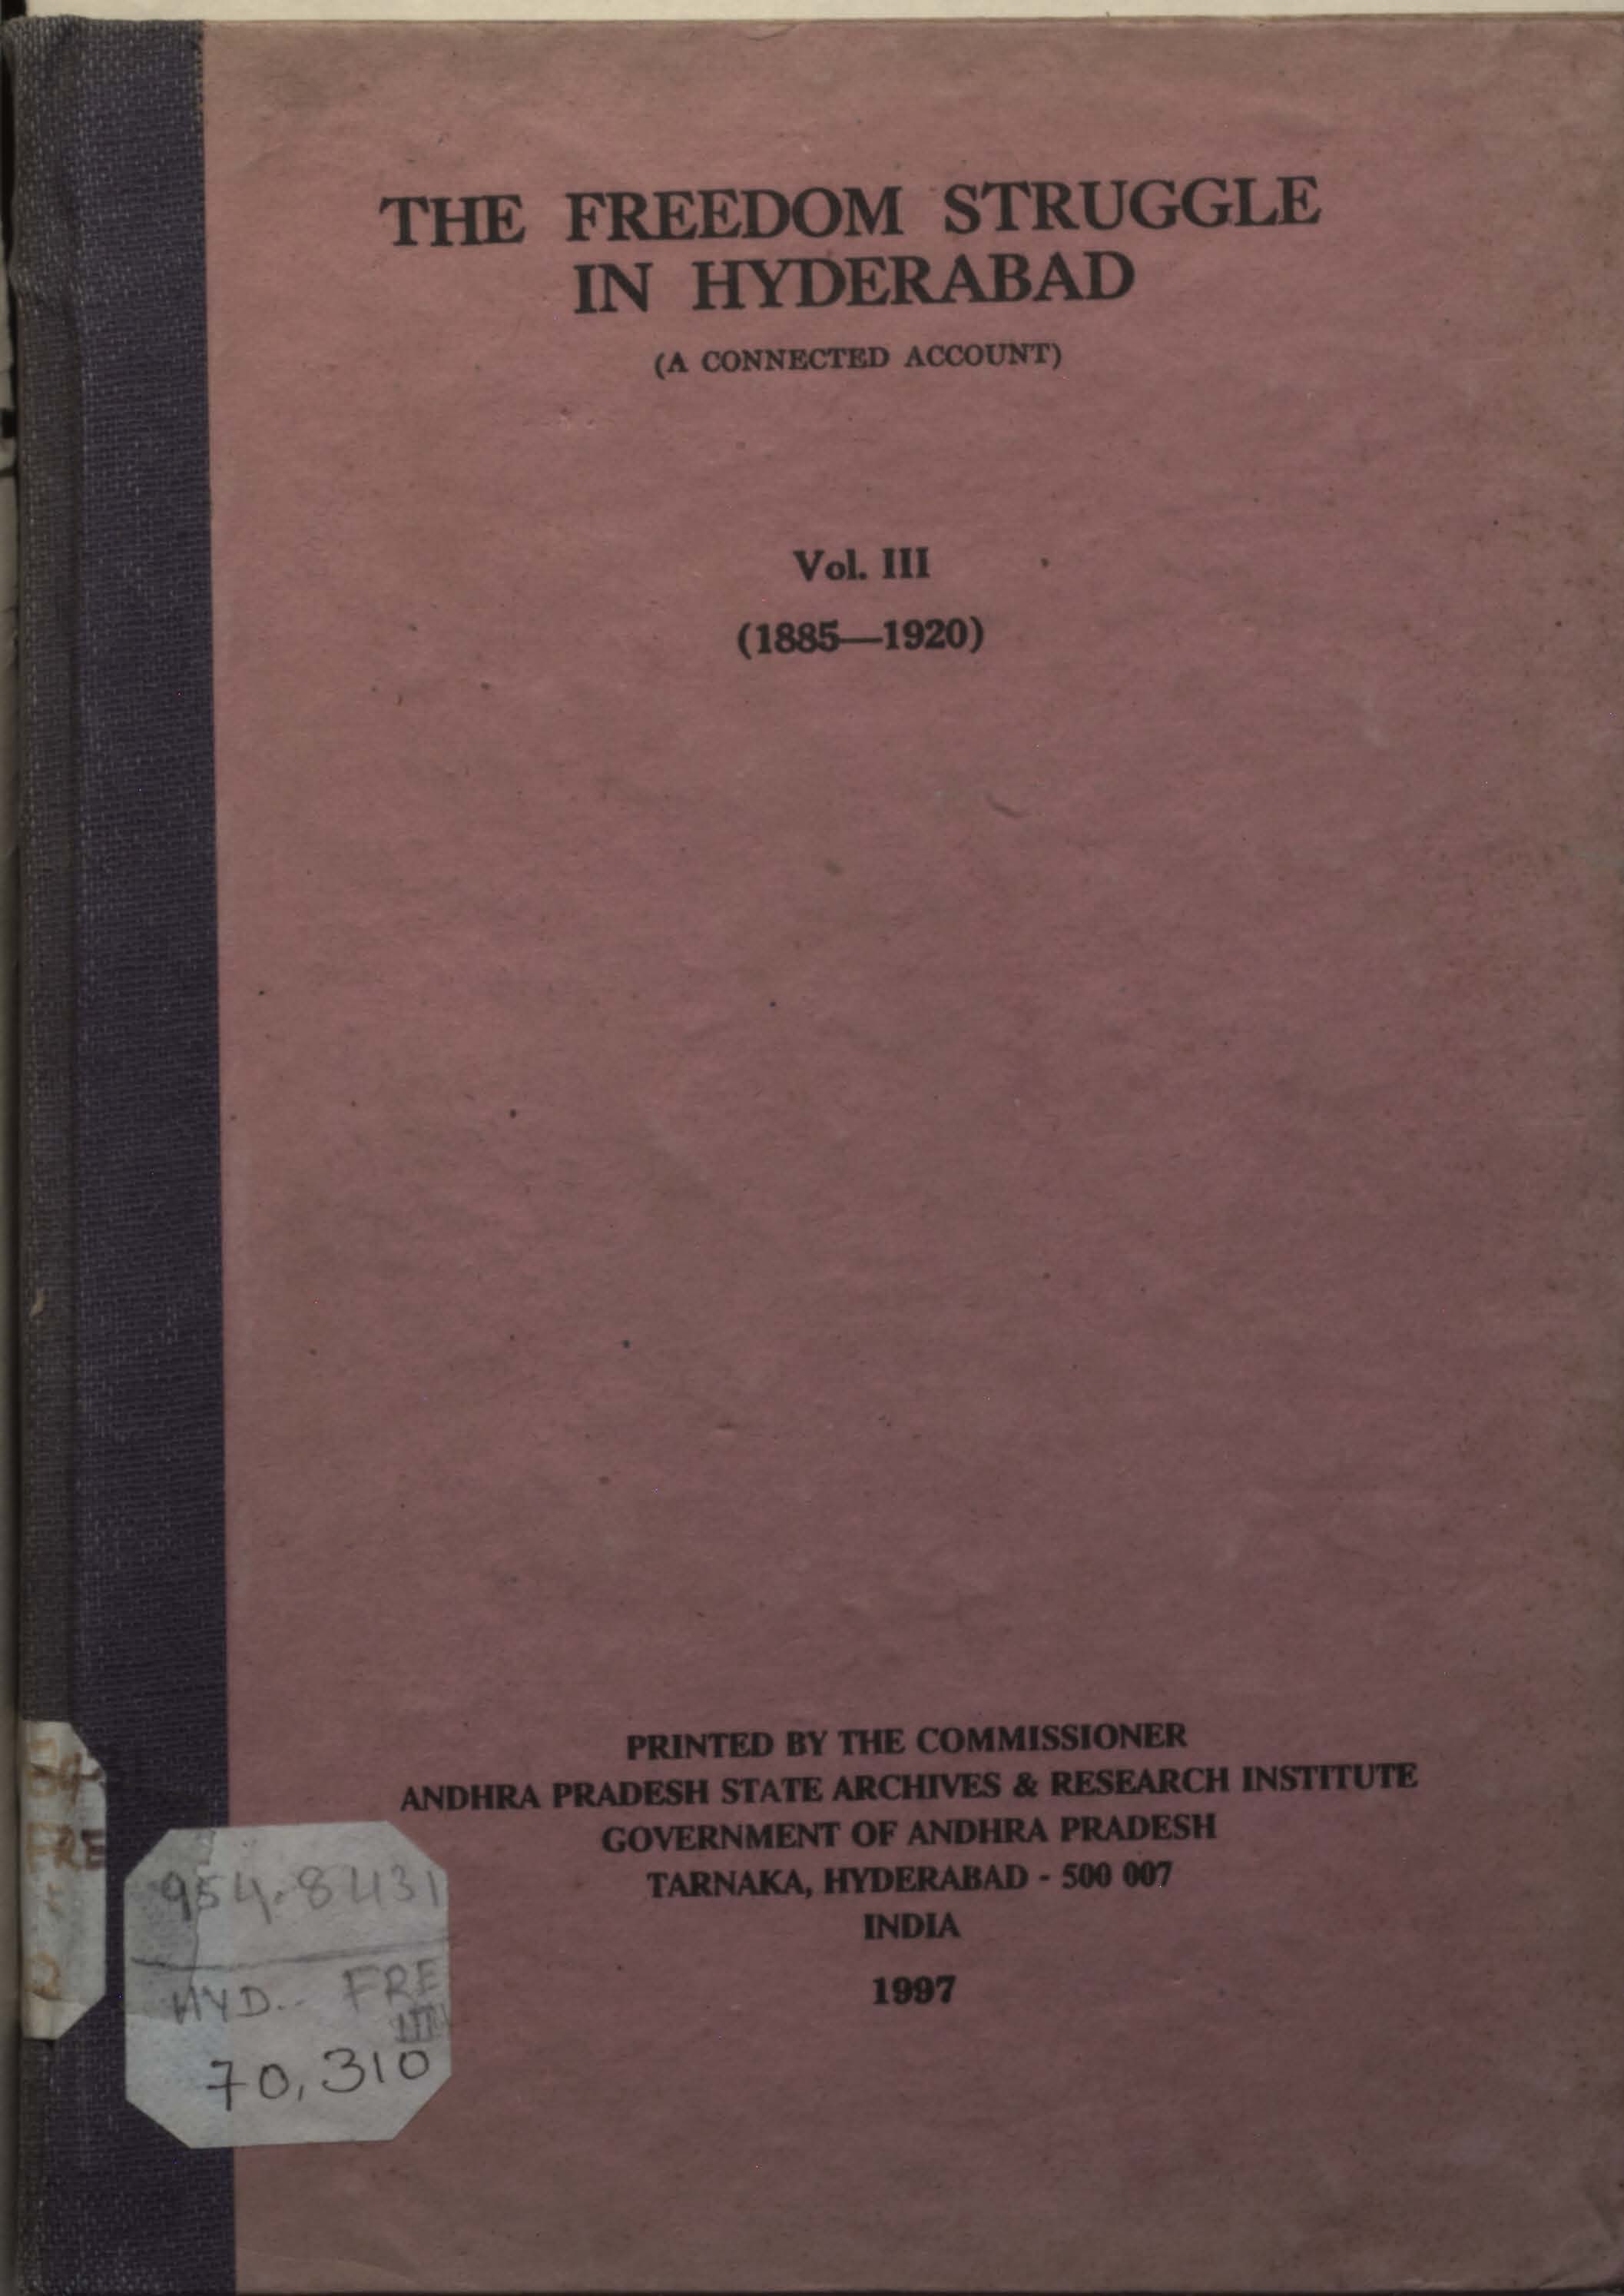 The Freedom Struggle in Hyderabad Vol - III (1885-1920)